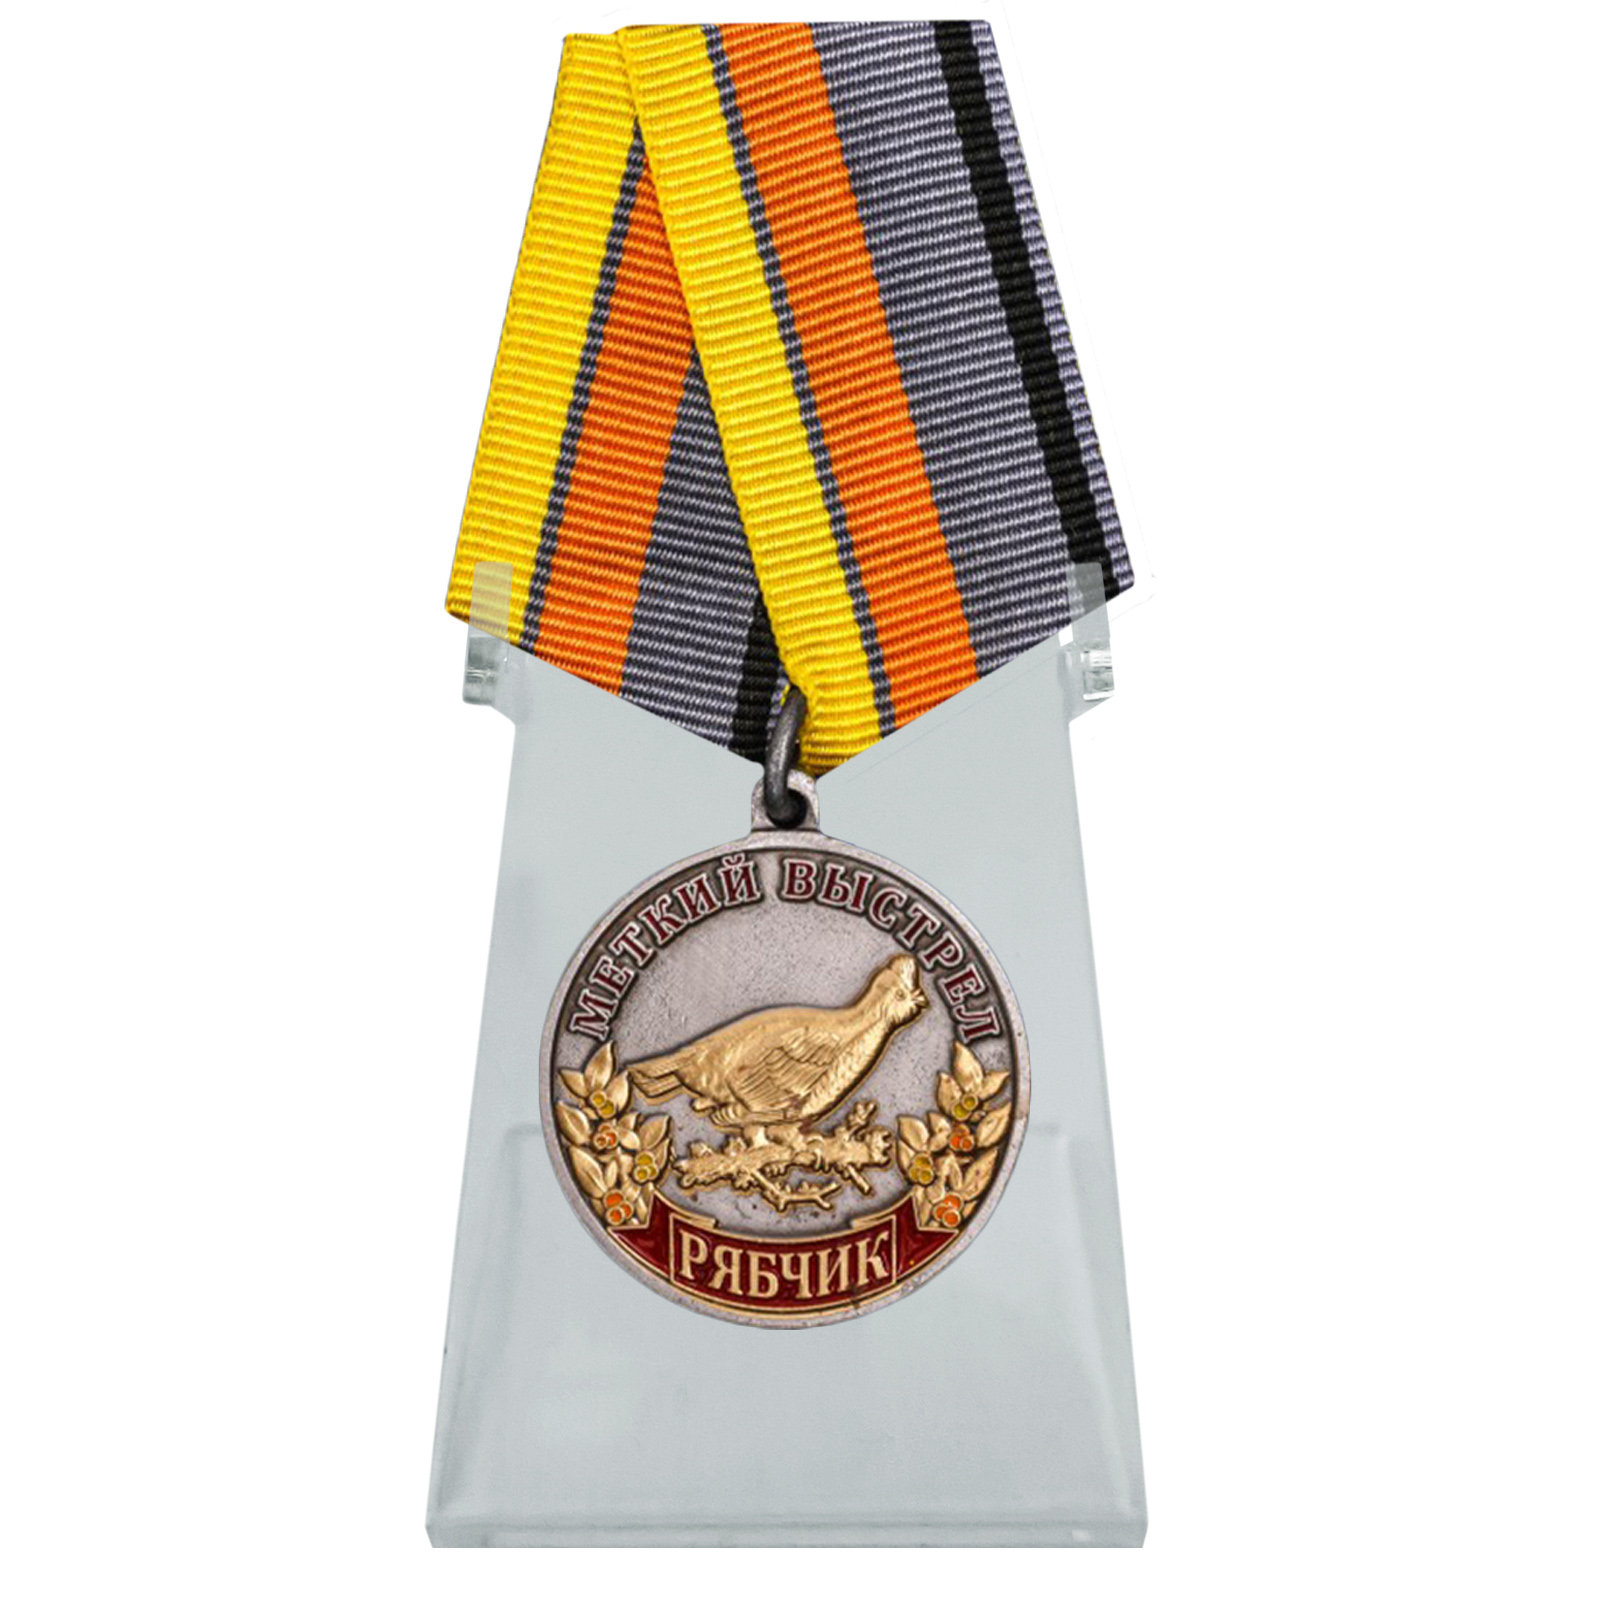 Купить медаль охотника Рябчик (Меткий выстрел) на подставке онлайн